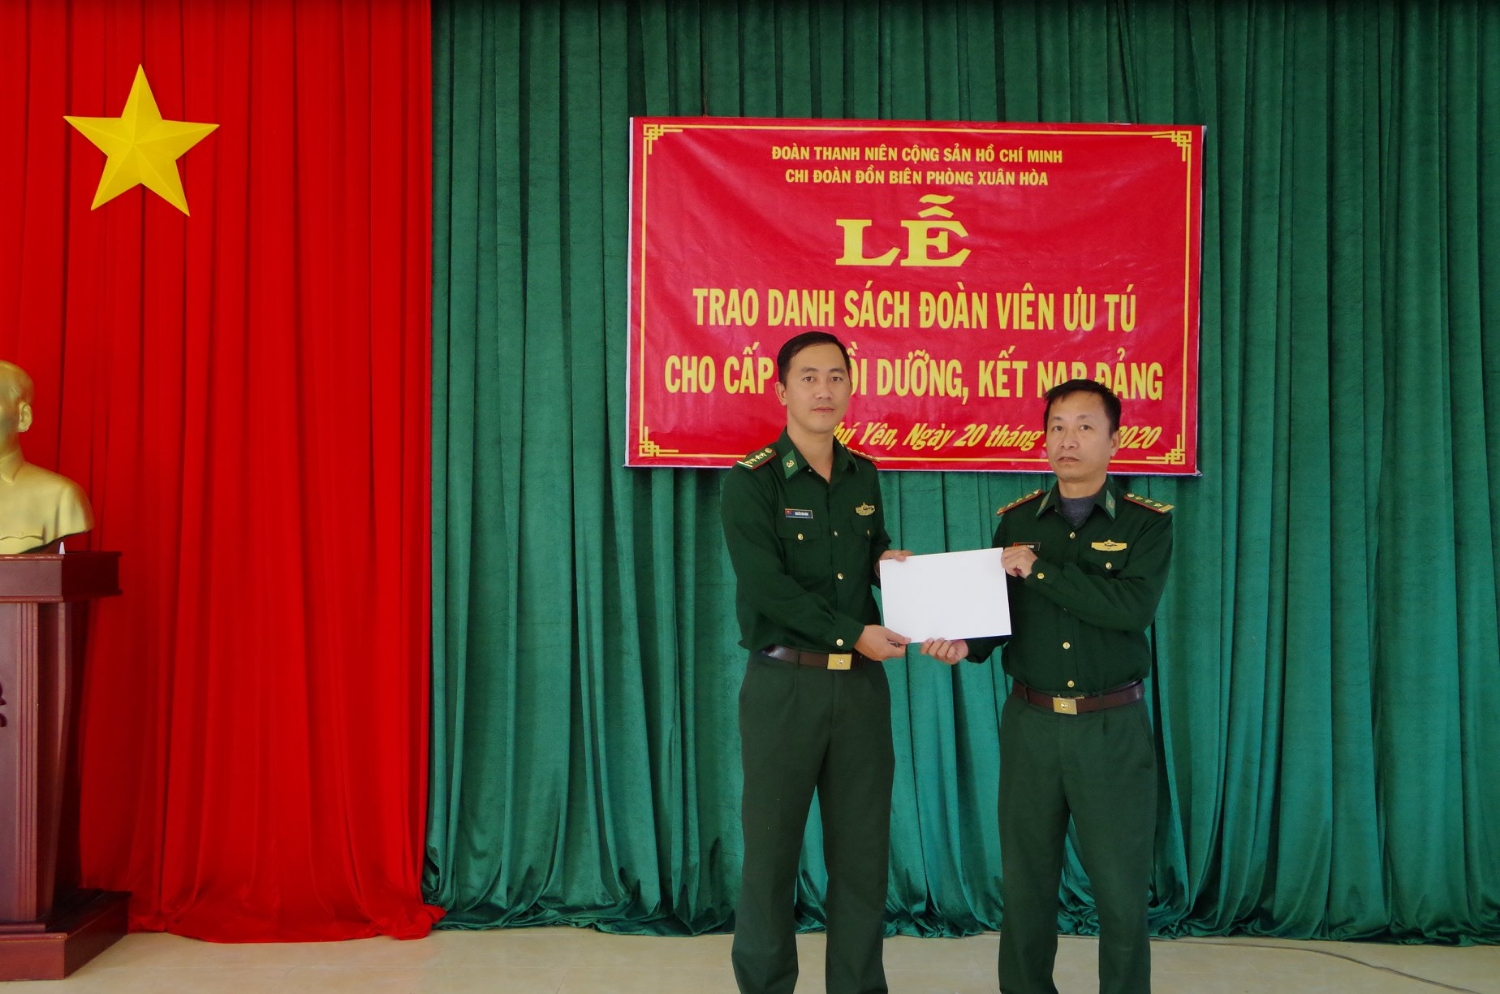 Chi đoàn đồn Biên phòng Xuân Hòa tổ chức Lễ trao danh sách "Đoàn viên ưu tú" cho cấp ủy bồi dưỡng, kết nạp Đảng.